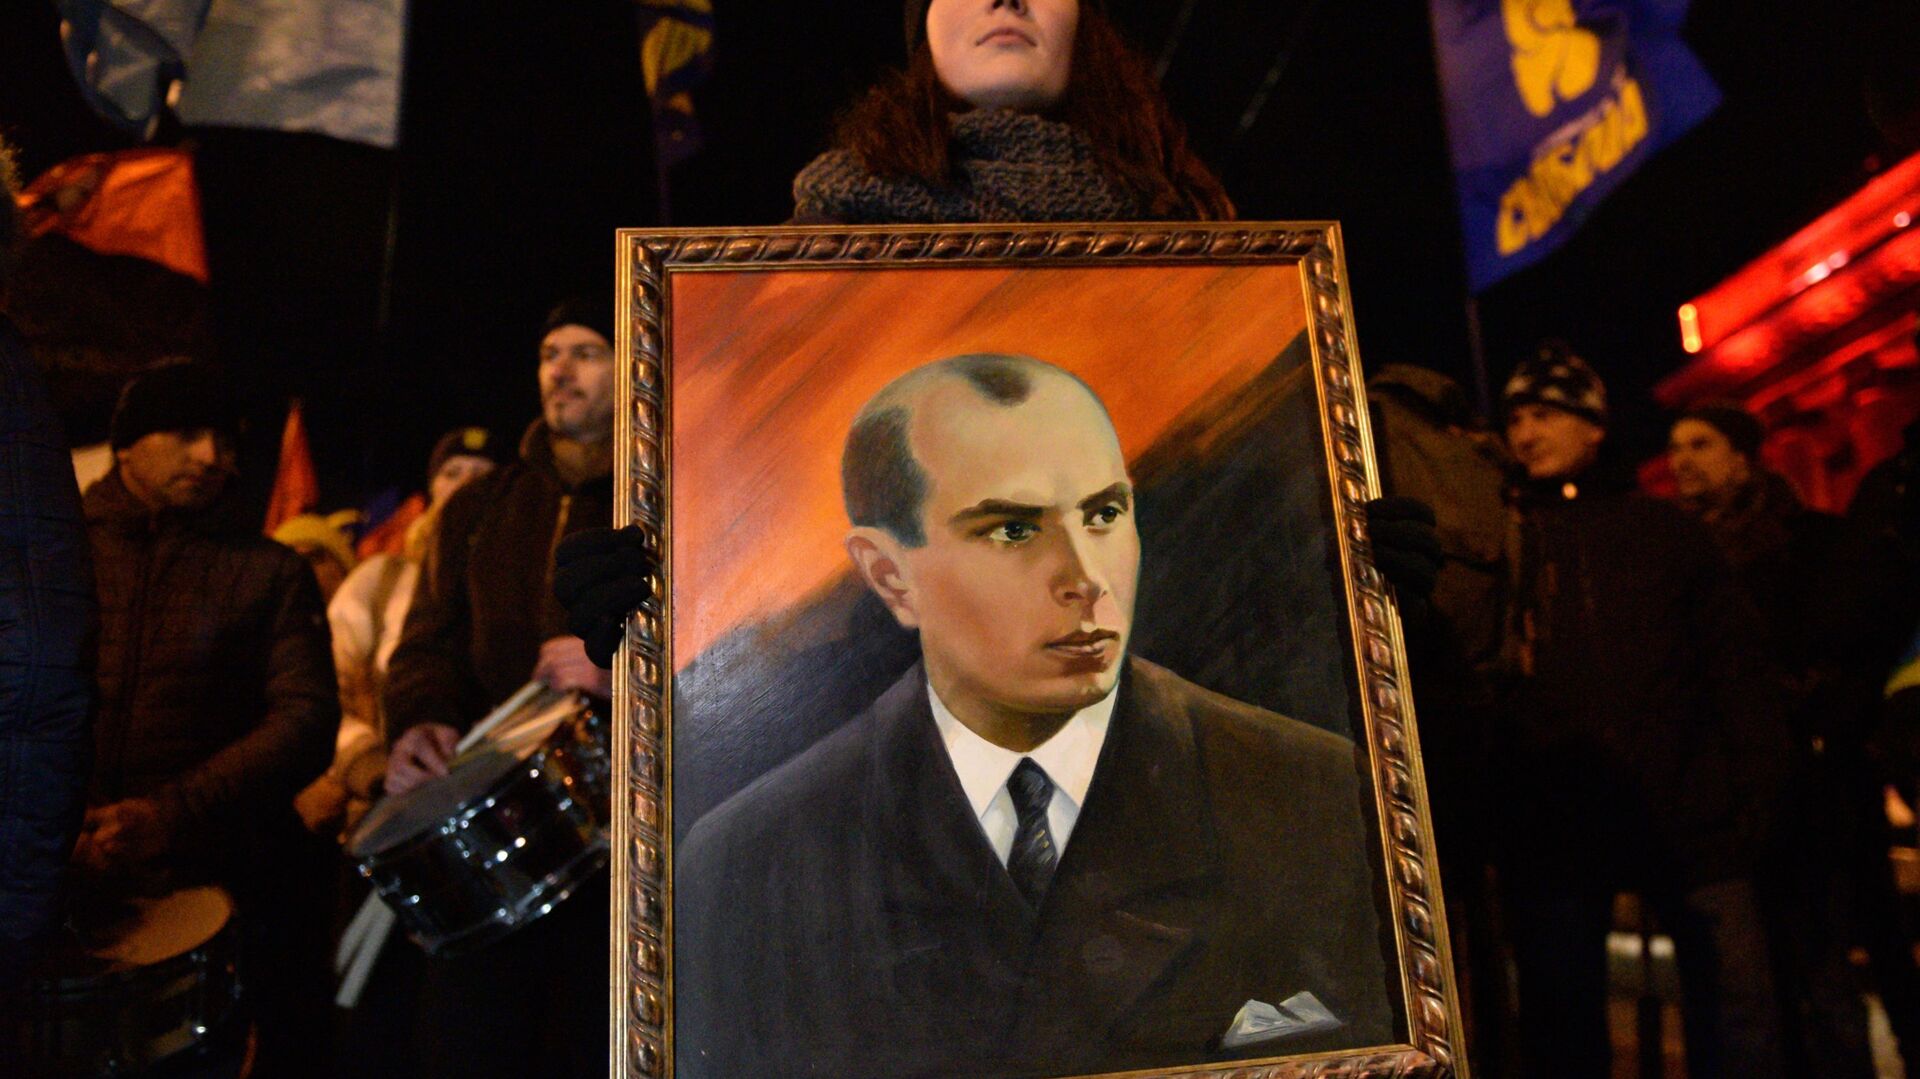 Một người tham gia lễ rước những người theo chủ nghĩa dân tộc ở Kiev với bức chân dung của Bandera, 2019 - Sputnik Việt Nam, 1920, 19.06.2022